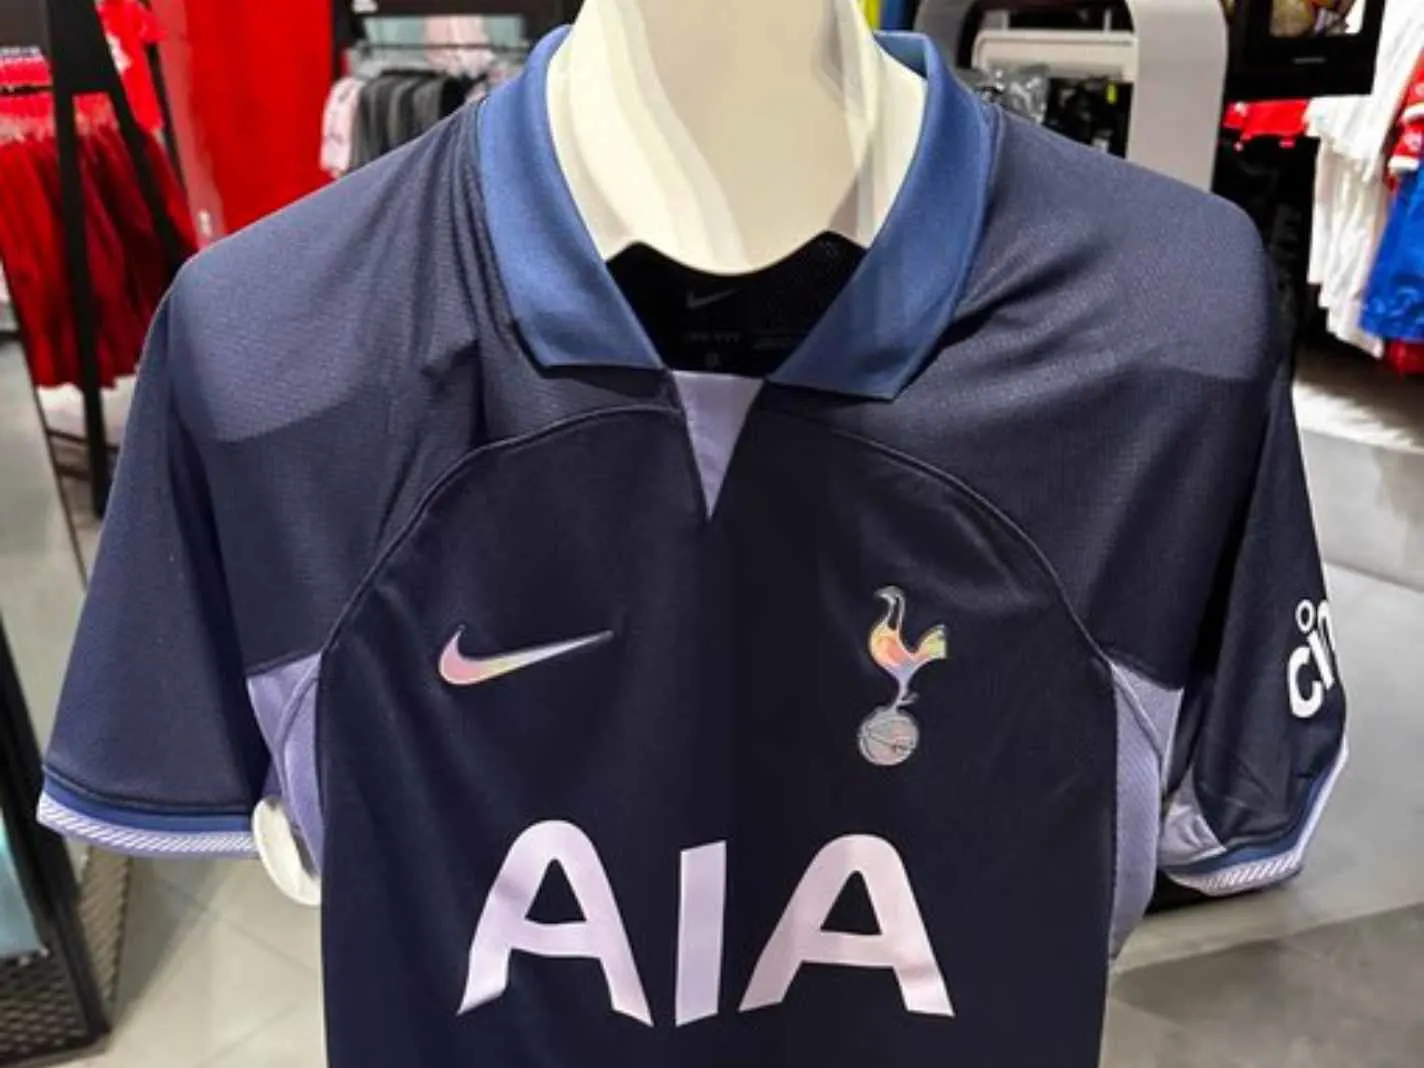 Nike Tottenham Away Shirt 2019-20 Leaked? » The Kitman